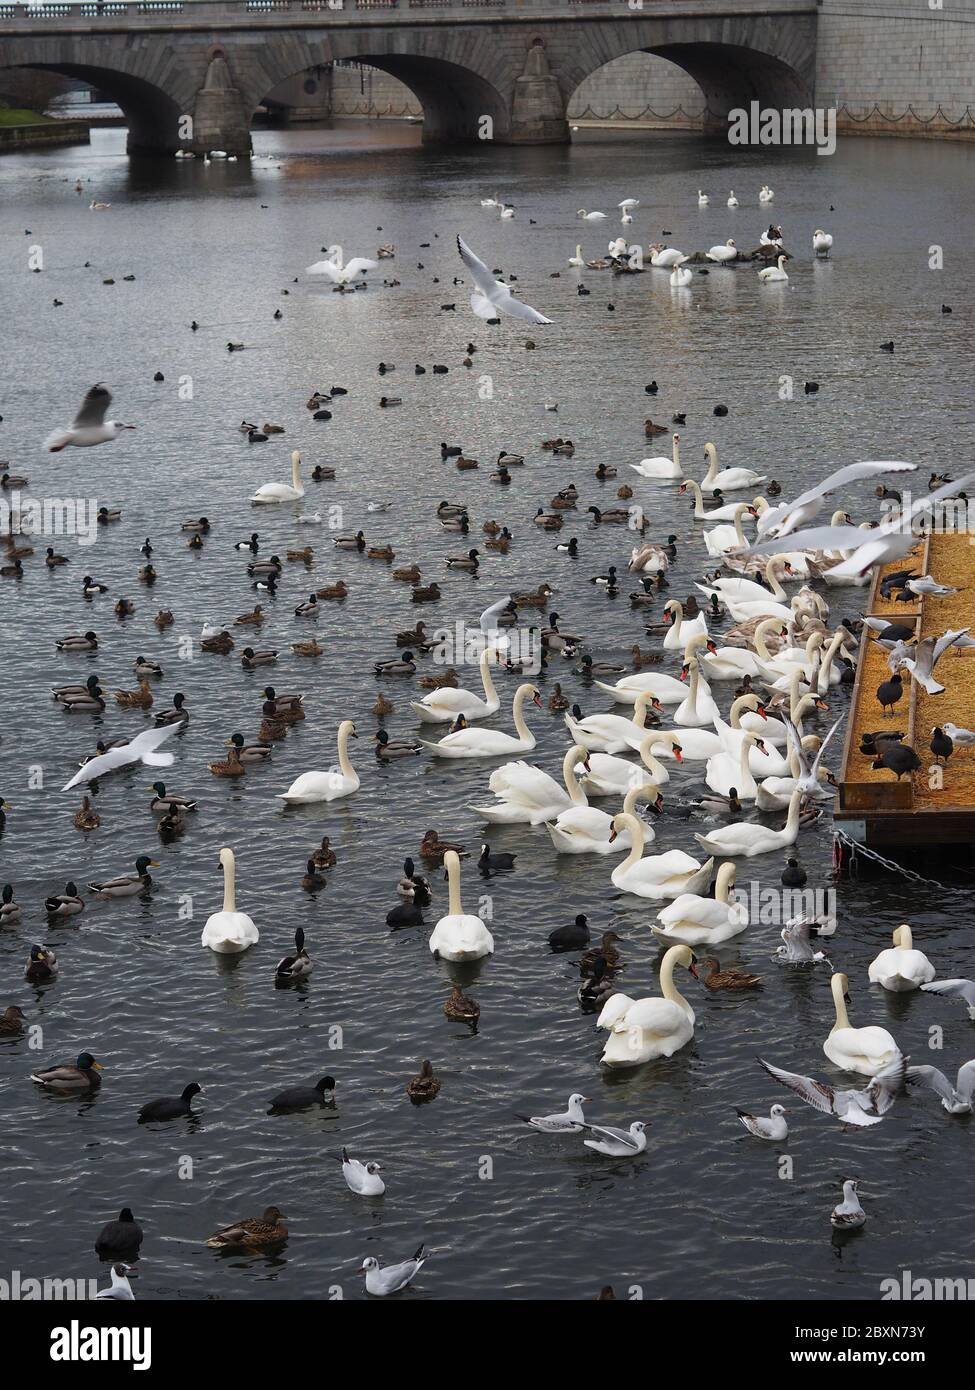 Cygnes et oiseaux sur l'eau à Stokholm, Sweeden. Nourrissage des oiseaux en ville. Banque D'Images